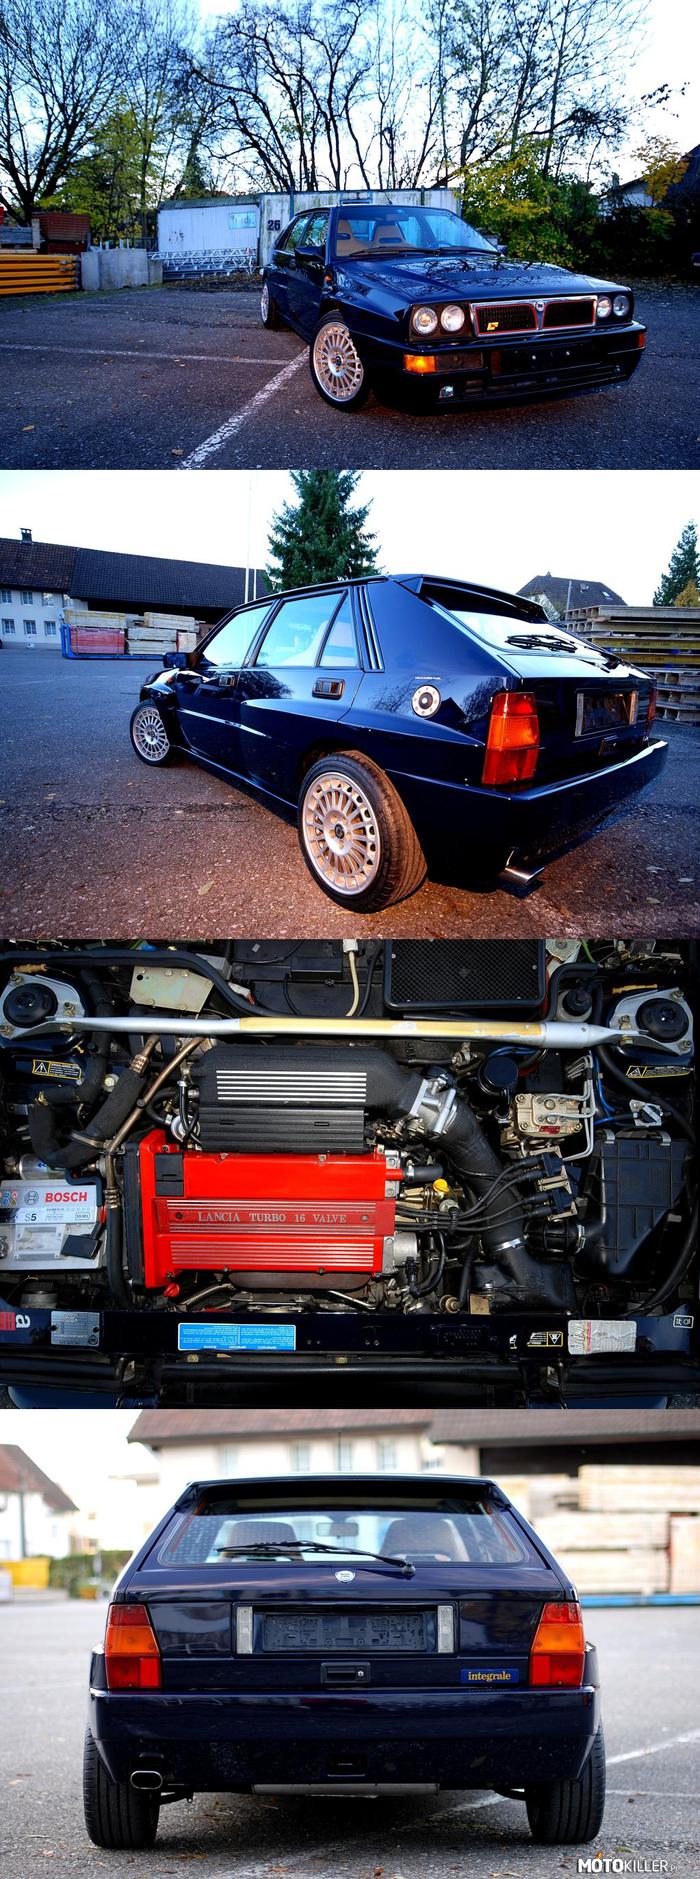 Lancia Delta HF Integrale 1993, kolor Lord – 1995 cm3, (121,742 cu. in.)
84 × 90 mm
DOHC, 16V
215 KM/5750 obr./min.
106,3 KM z 1000 cm3
ciśnienie sprężania: 8:1
0-100: 5,7s
Vmax: 220 km/h 